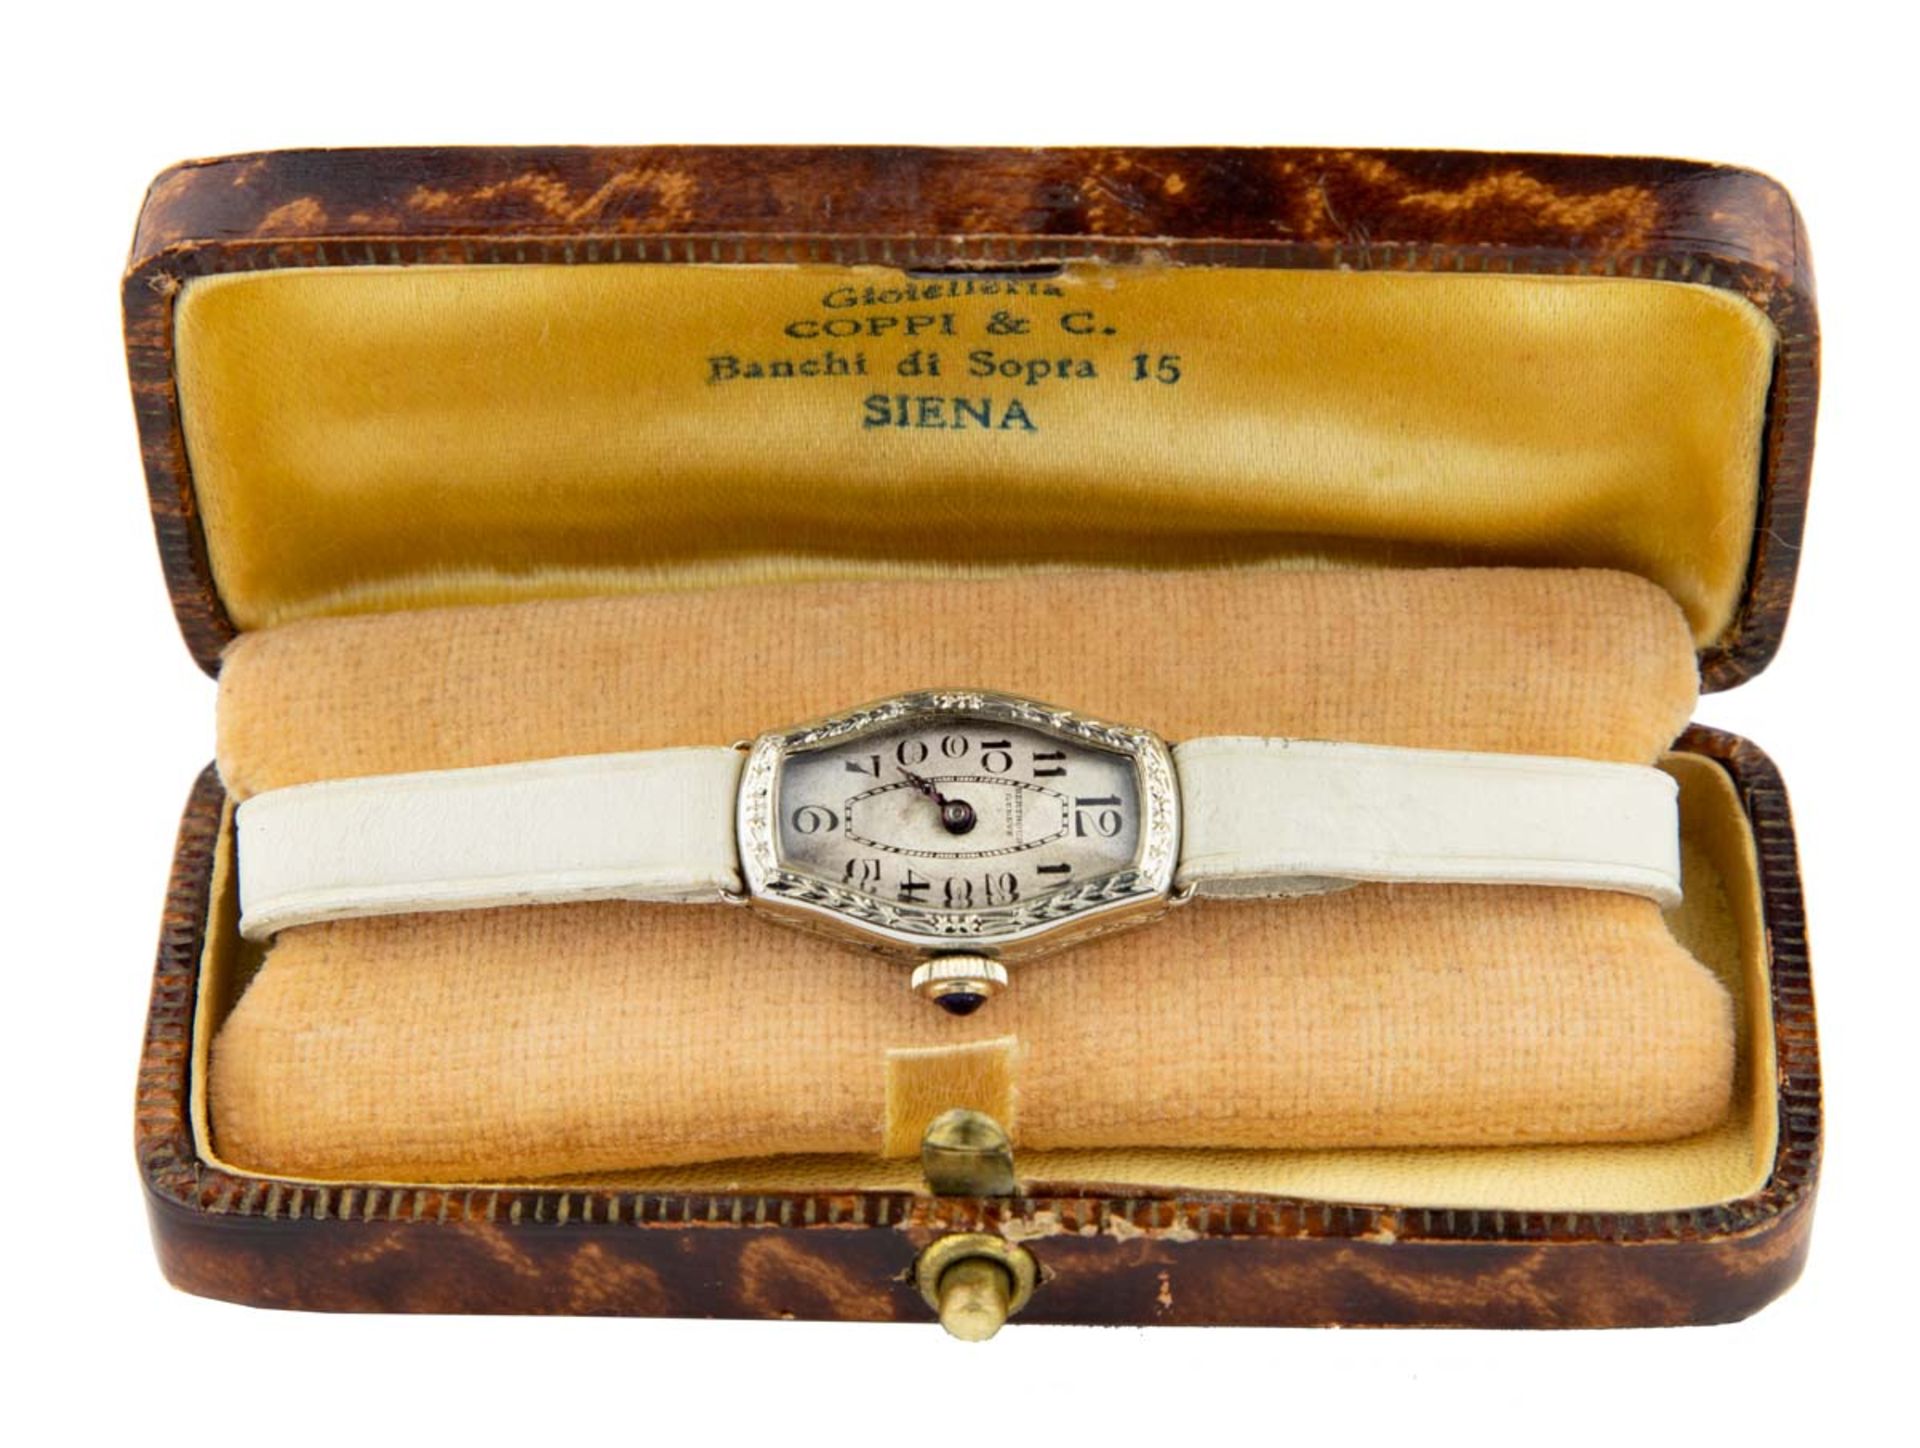 BERTHOUD GenèveMontre bracelet en or blanc 18k vers 1930, boîtier tonneau, cadran blanc avec index